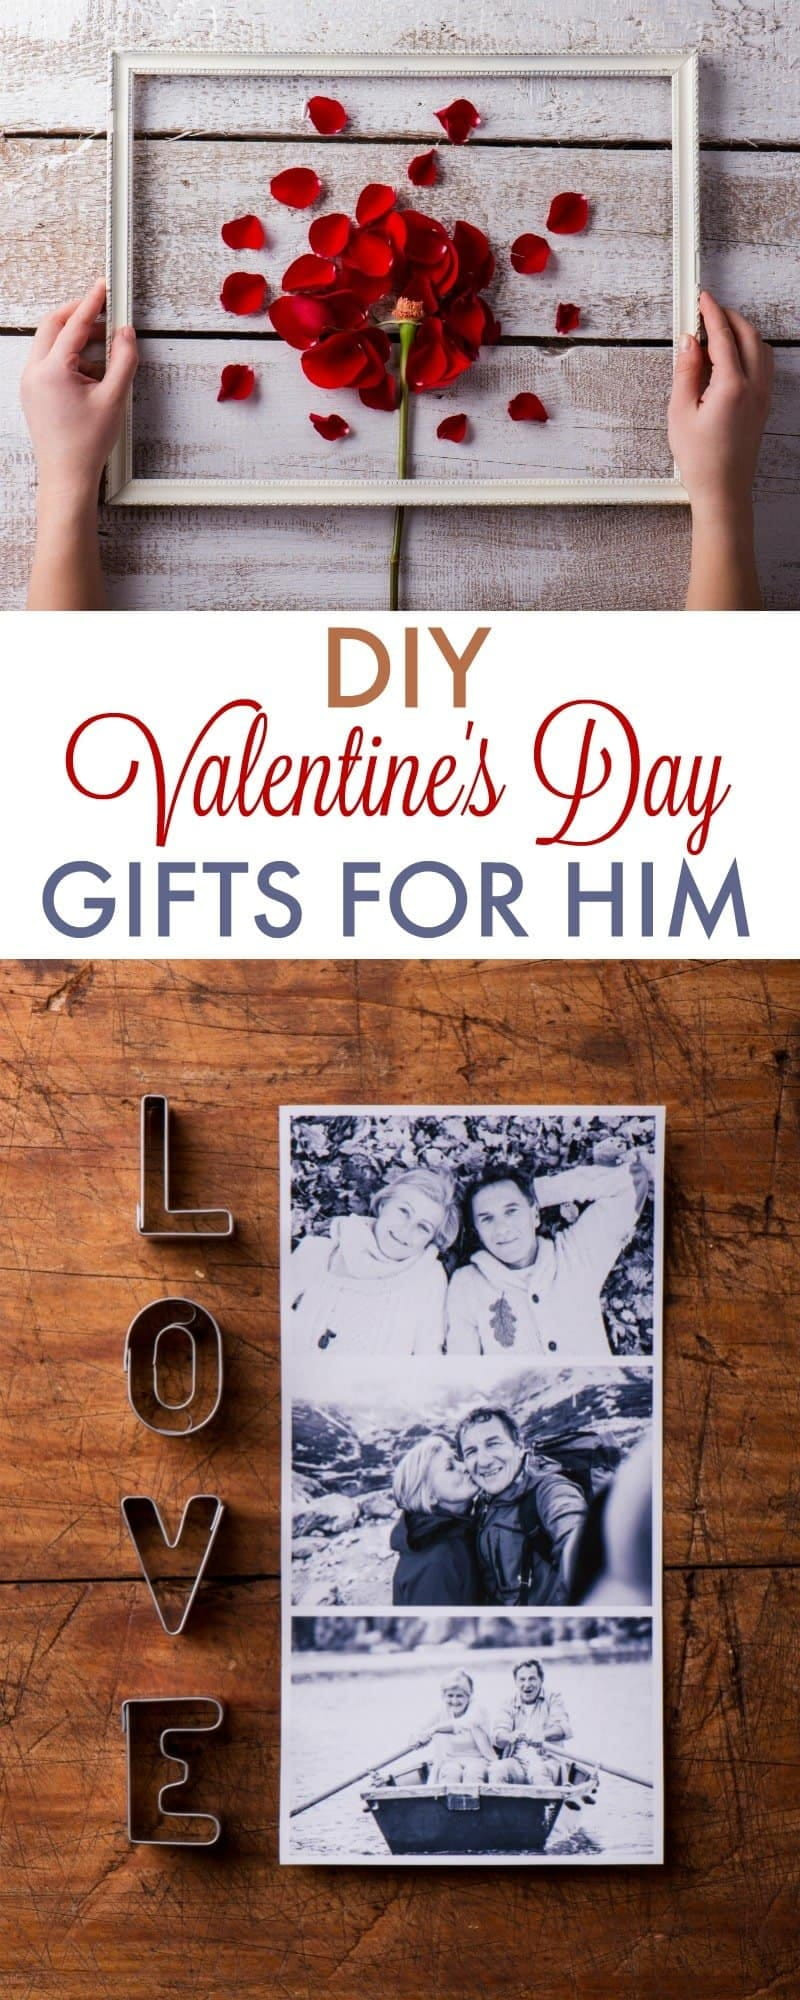 Gift Ideas For Boyfriend On Valentine'S Day
 DIY Valentine s Day Gifts for Boyfriend 730 Sage Street